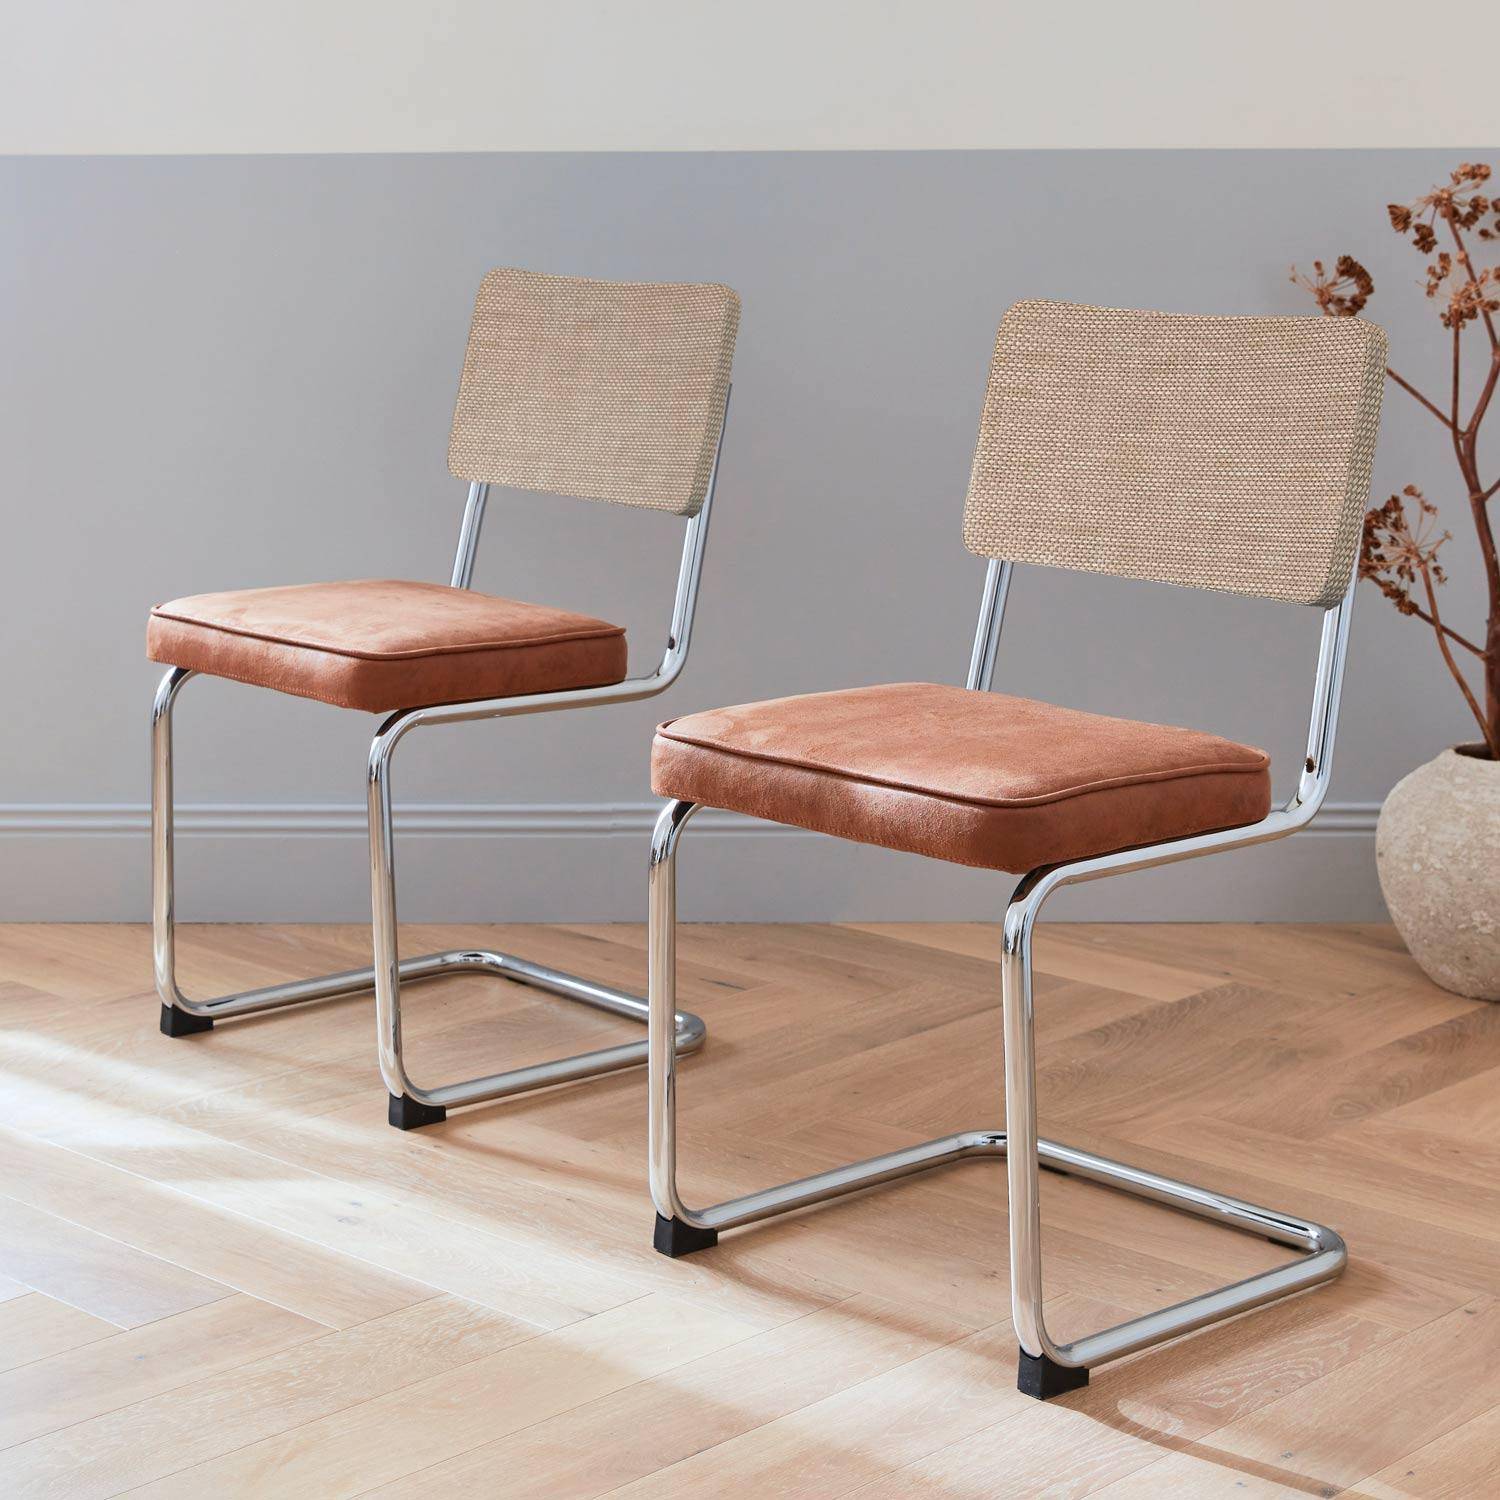 2 chaises cantilever - Maja - tissu marron et résine, 46 x 54,5 x 84,5cm   Photo1